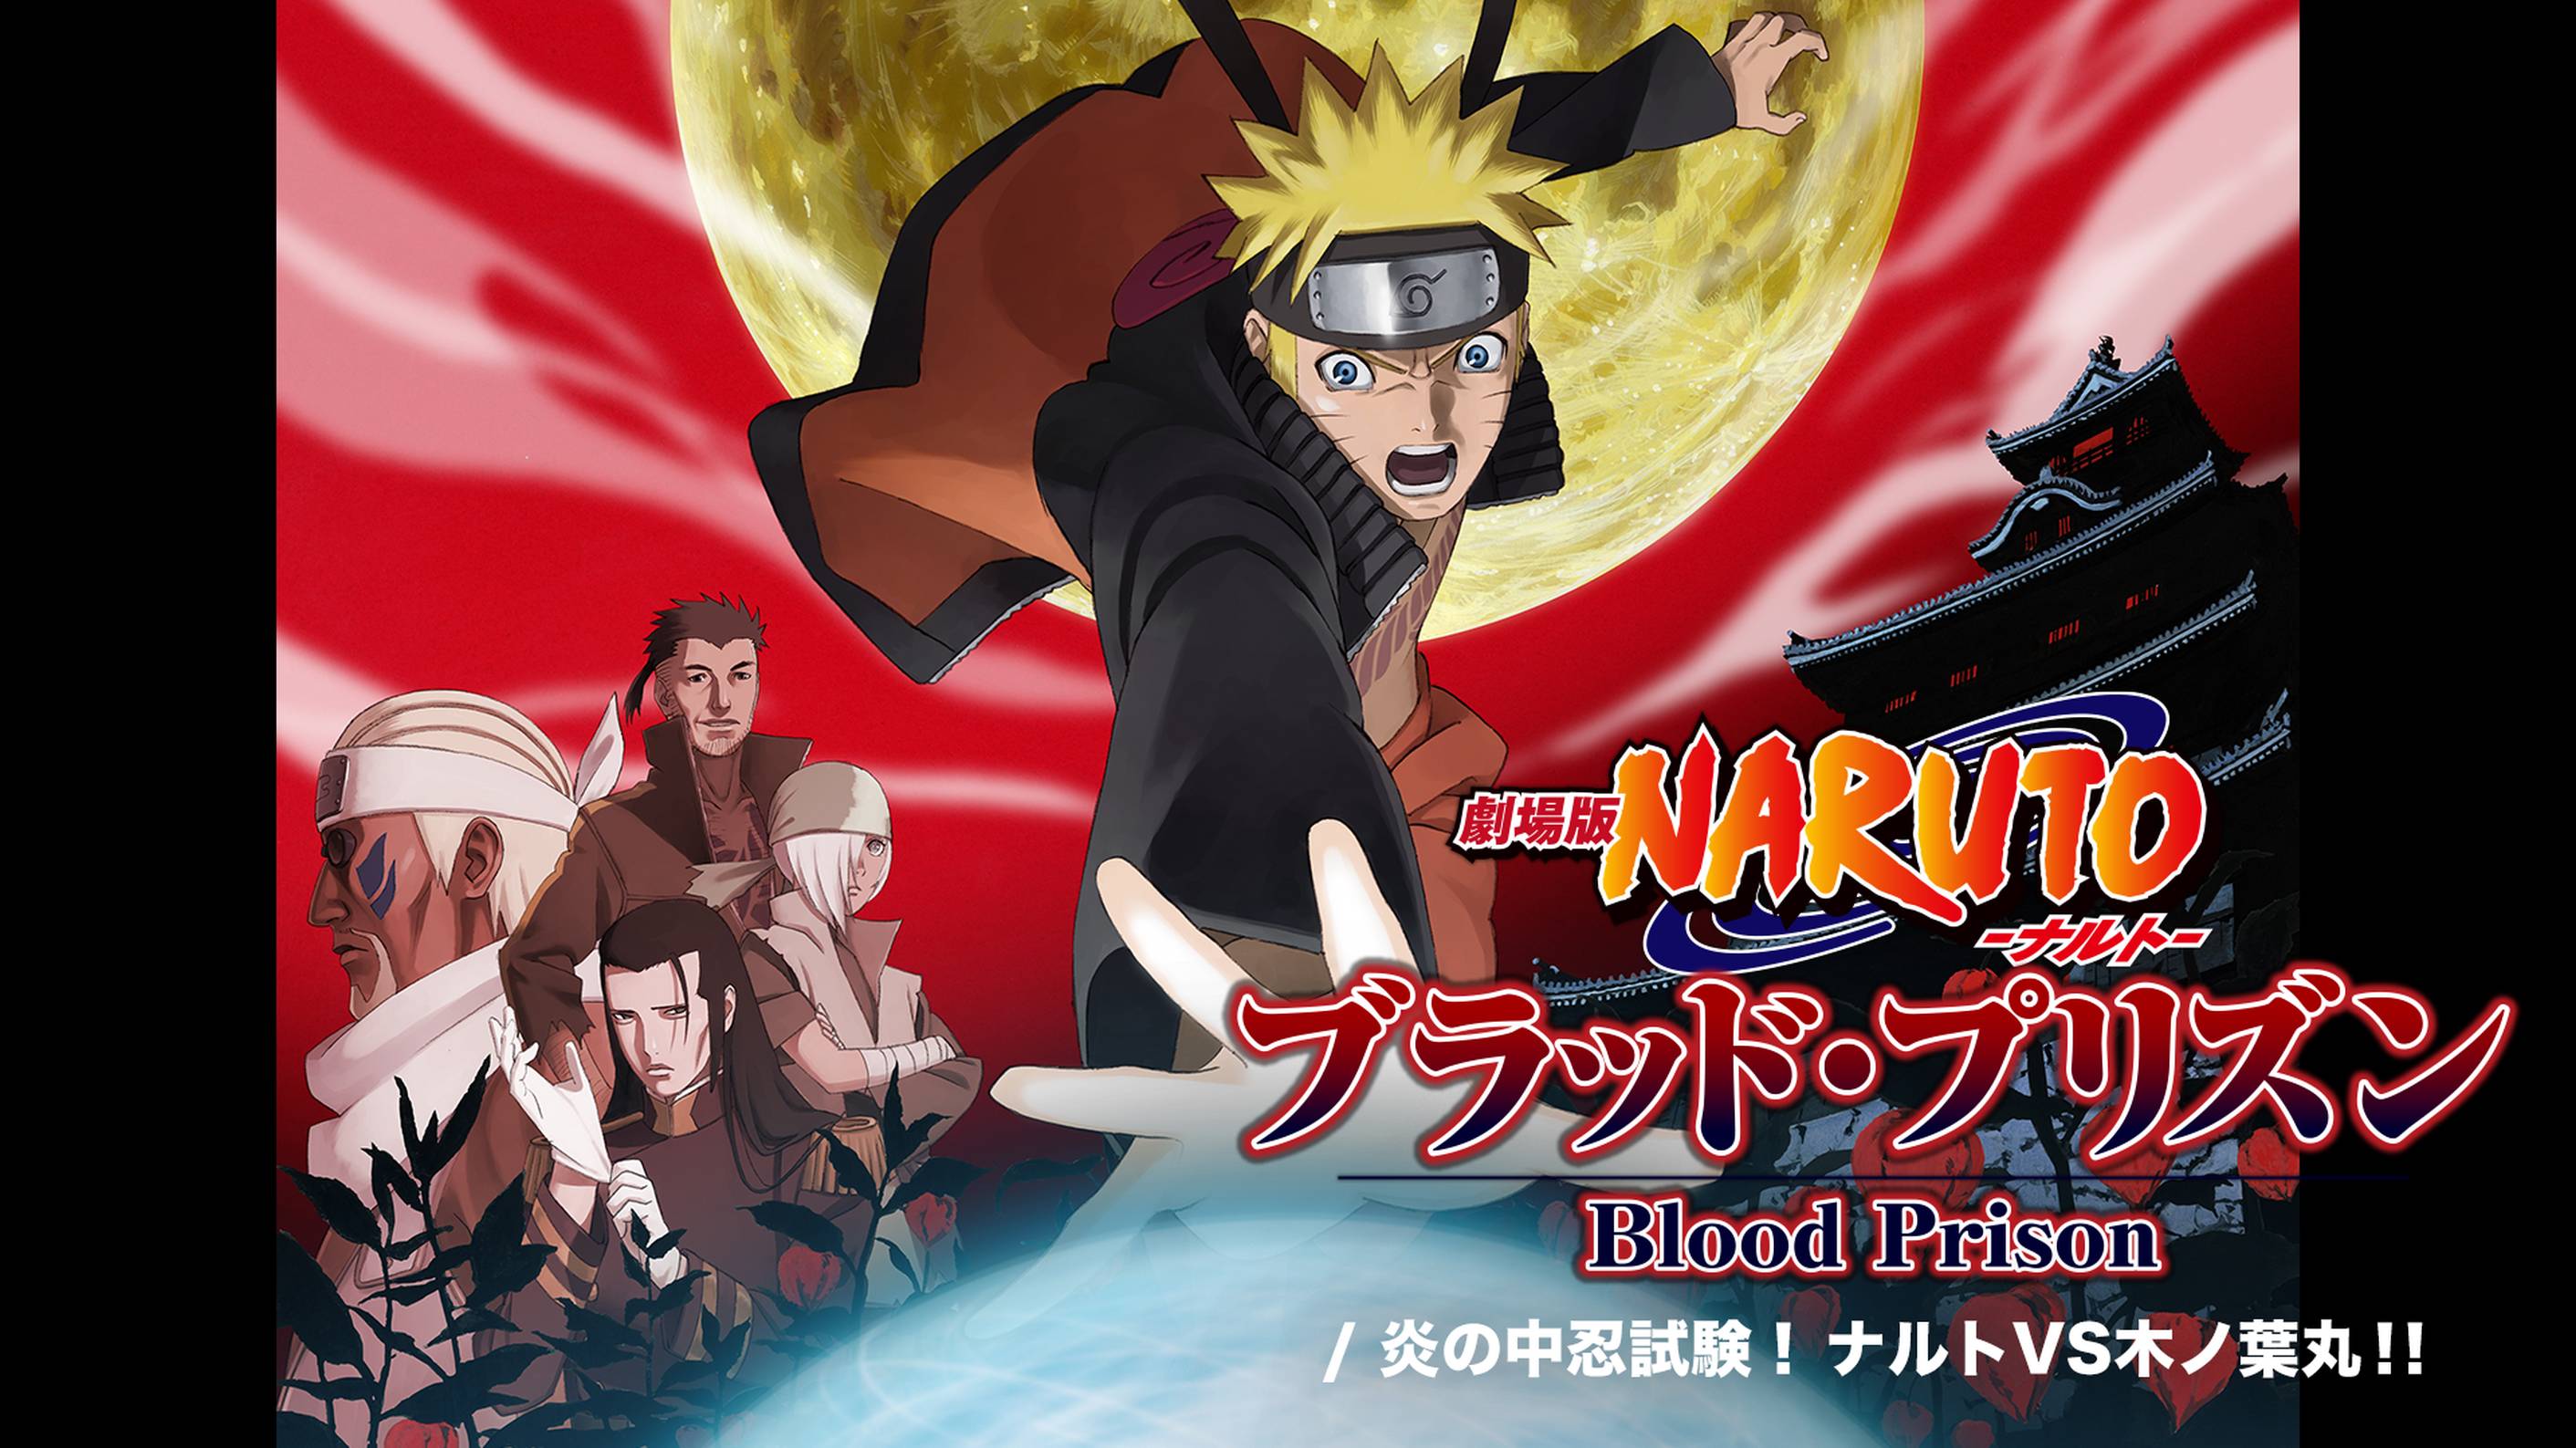 Desenho animado - Boruto: Naruto the Movie Boruto: Naruto za Mūbī